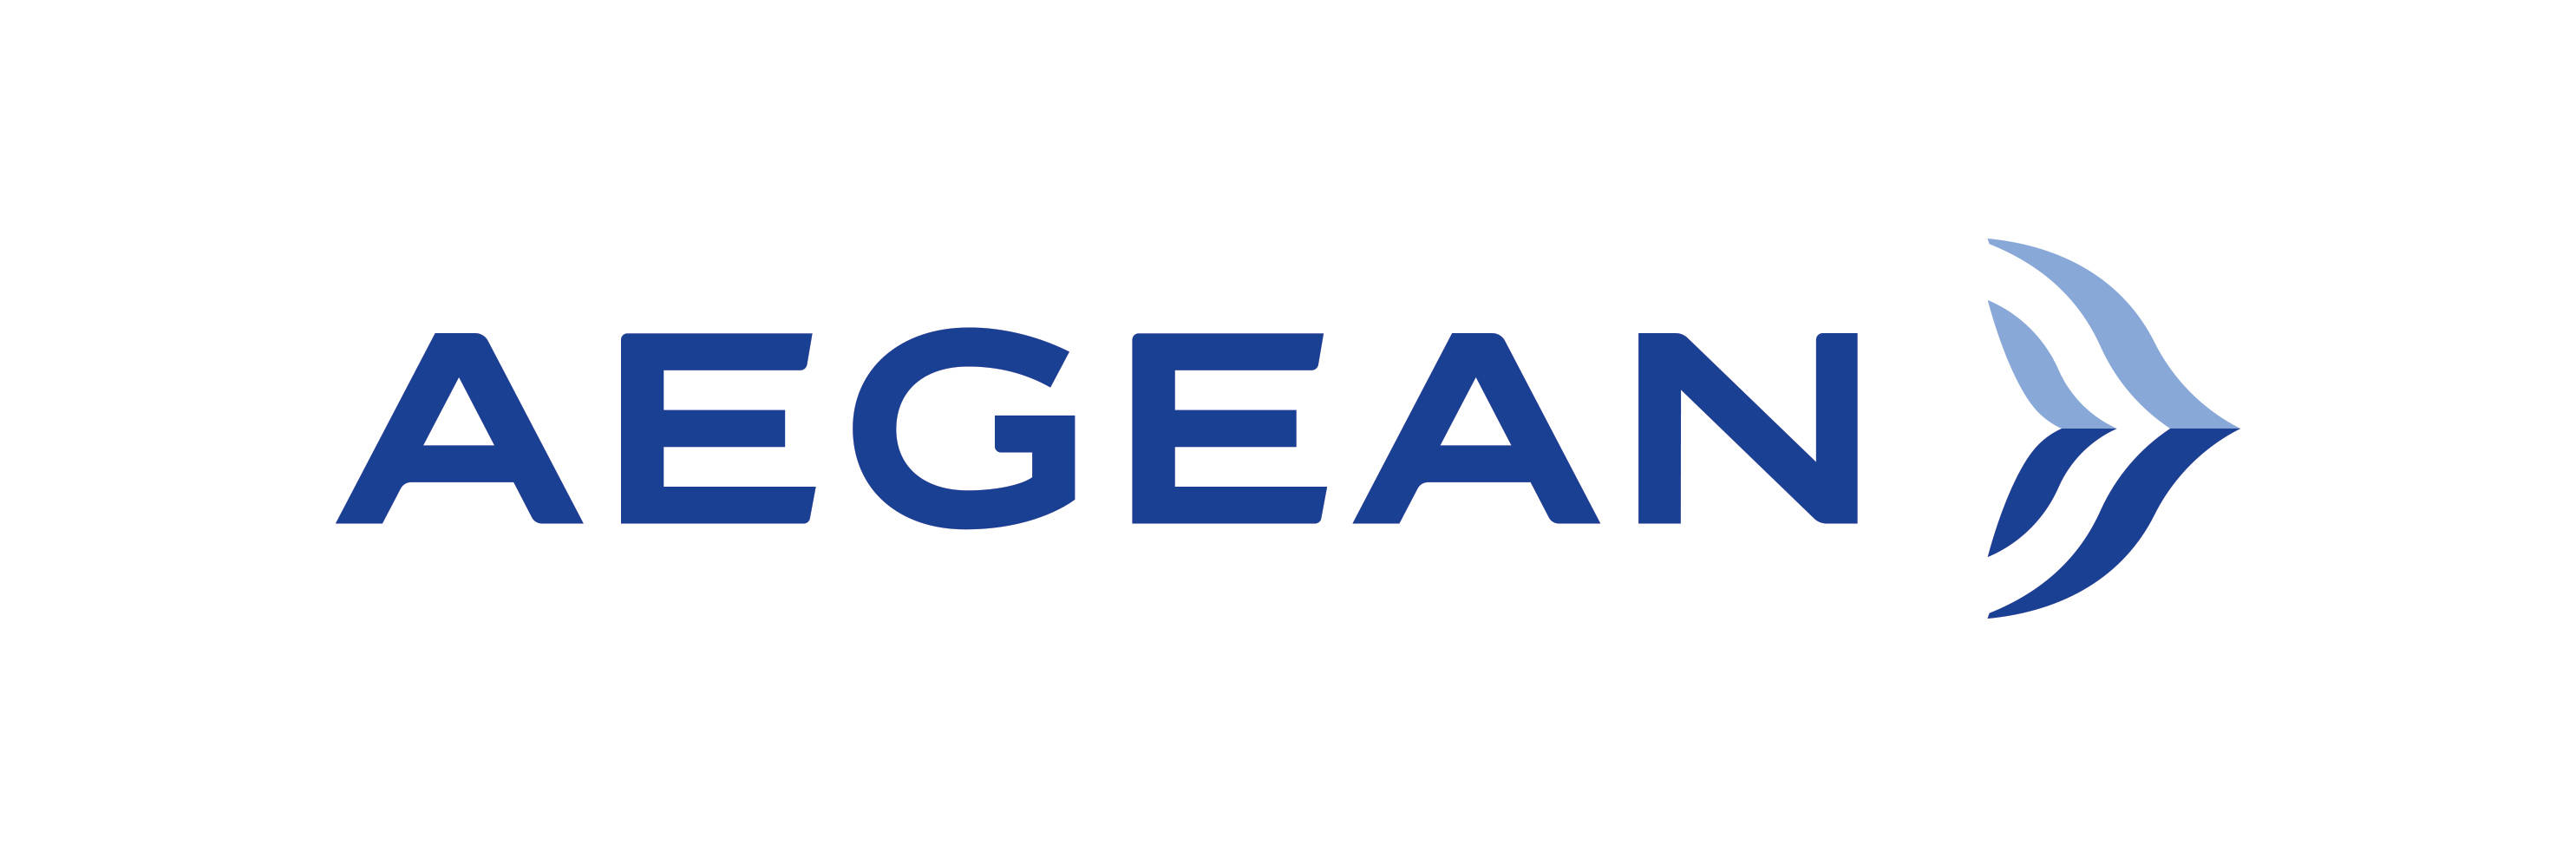 Logotipominimalista De Aegean Airlines, Aerolínea De Bandera. Fondo de pantalla